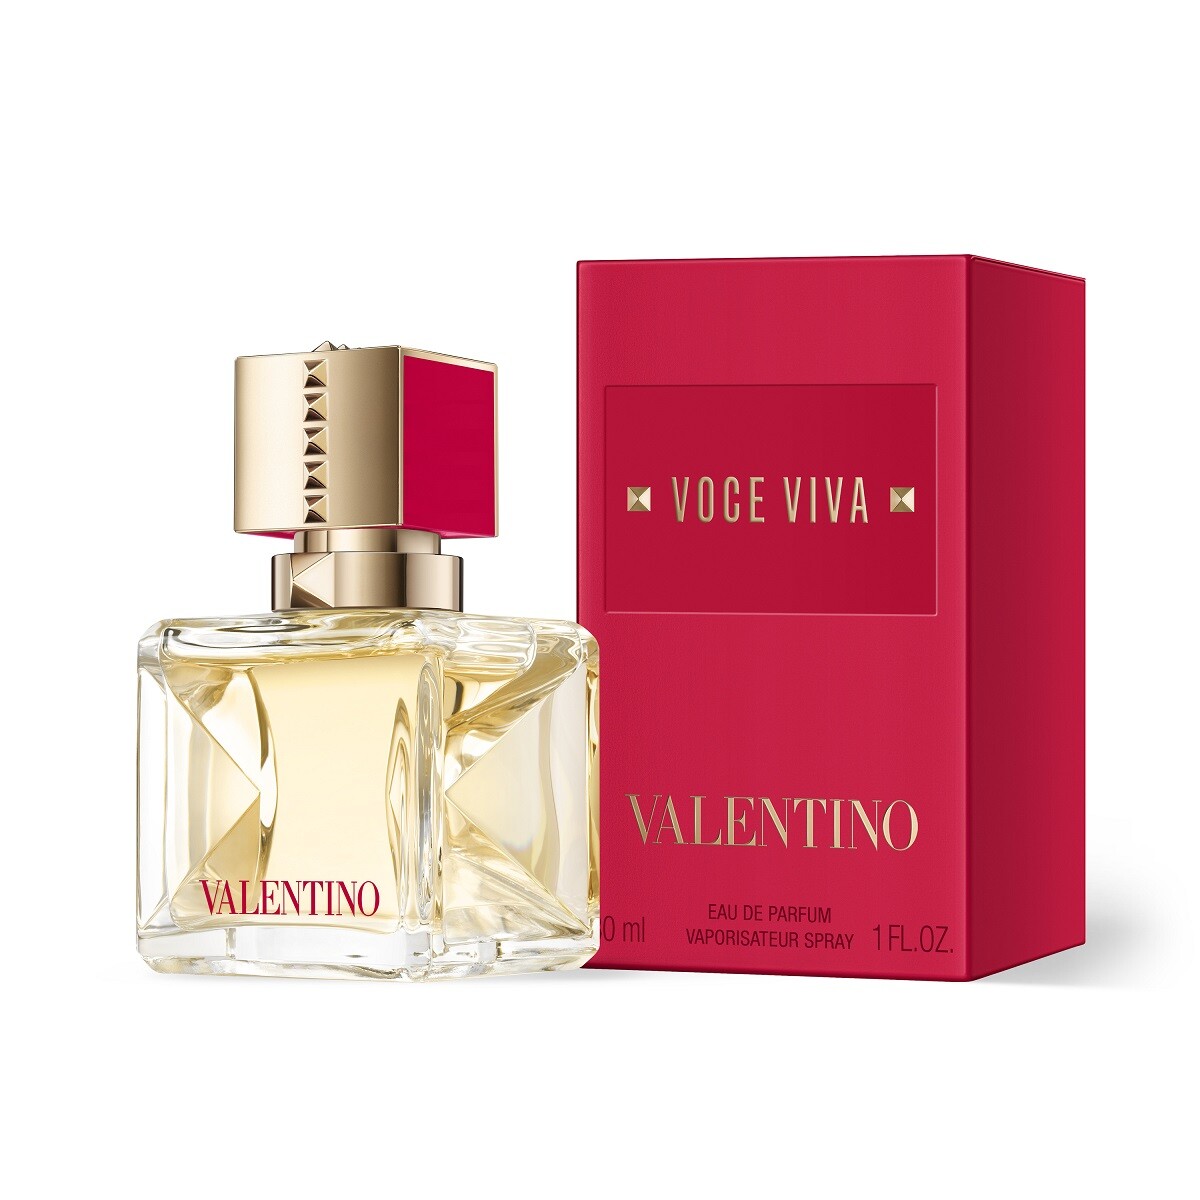 Perfume Valentino Voce Viva Edp 30 Ml. 